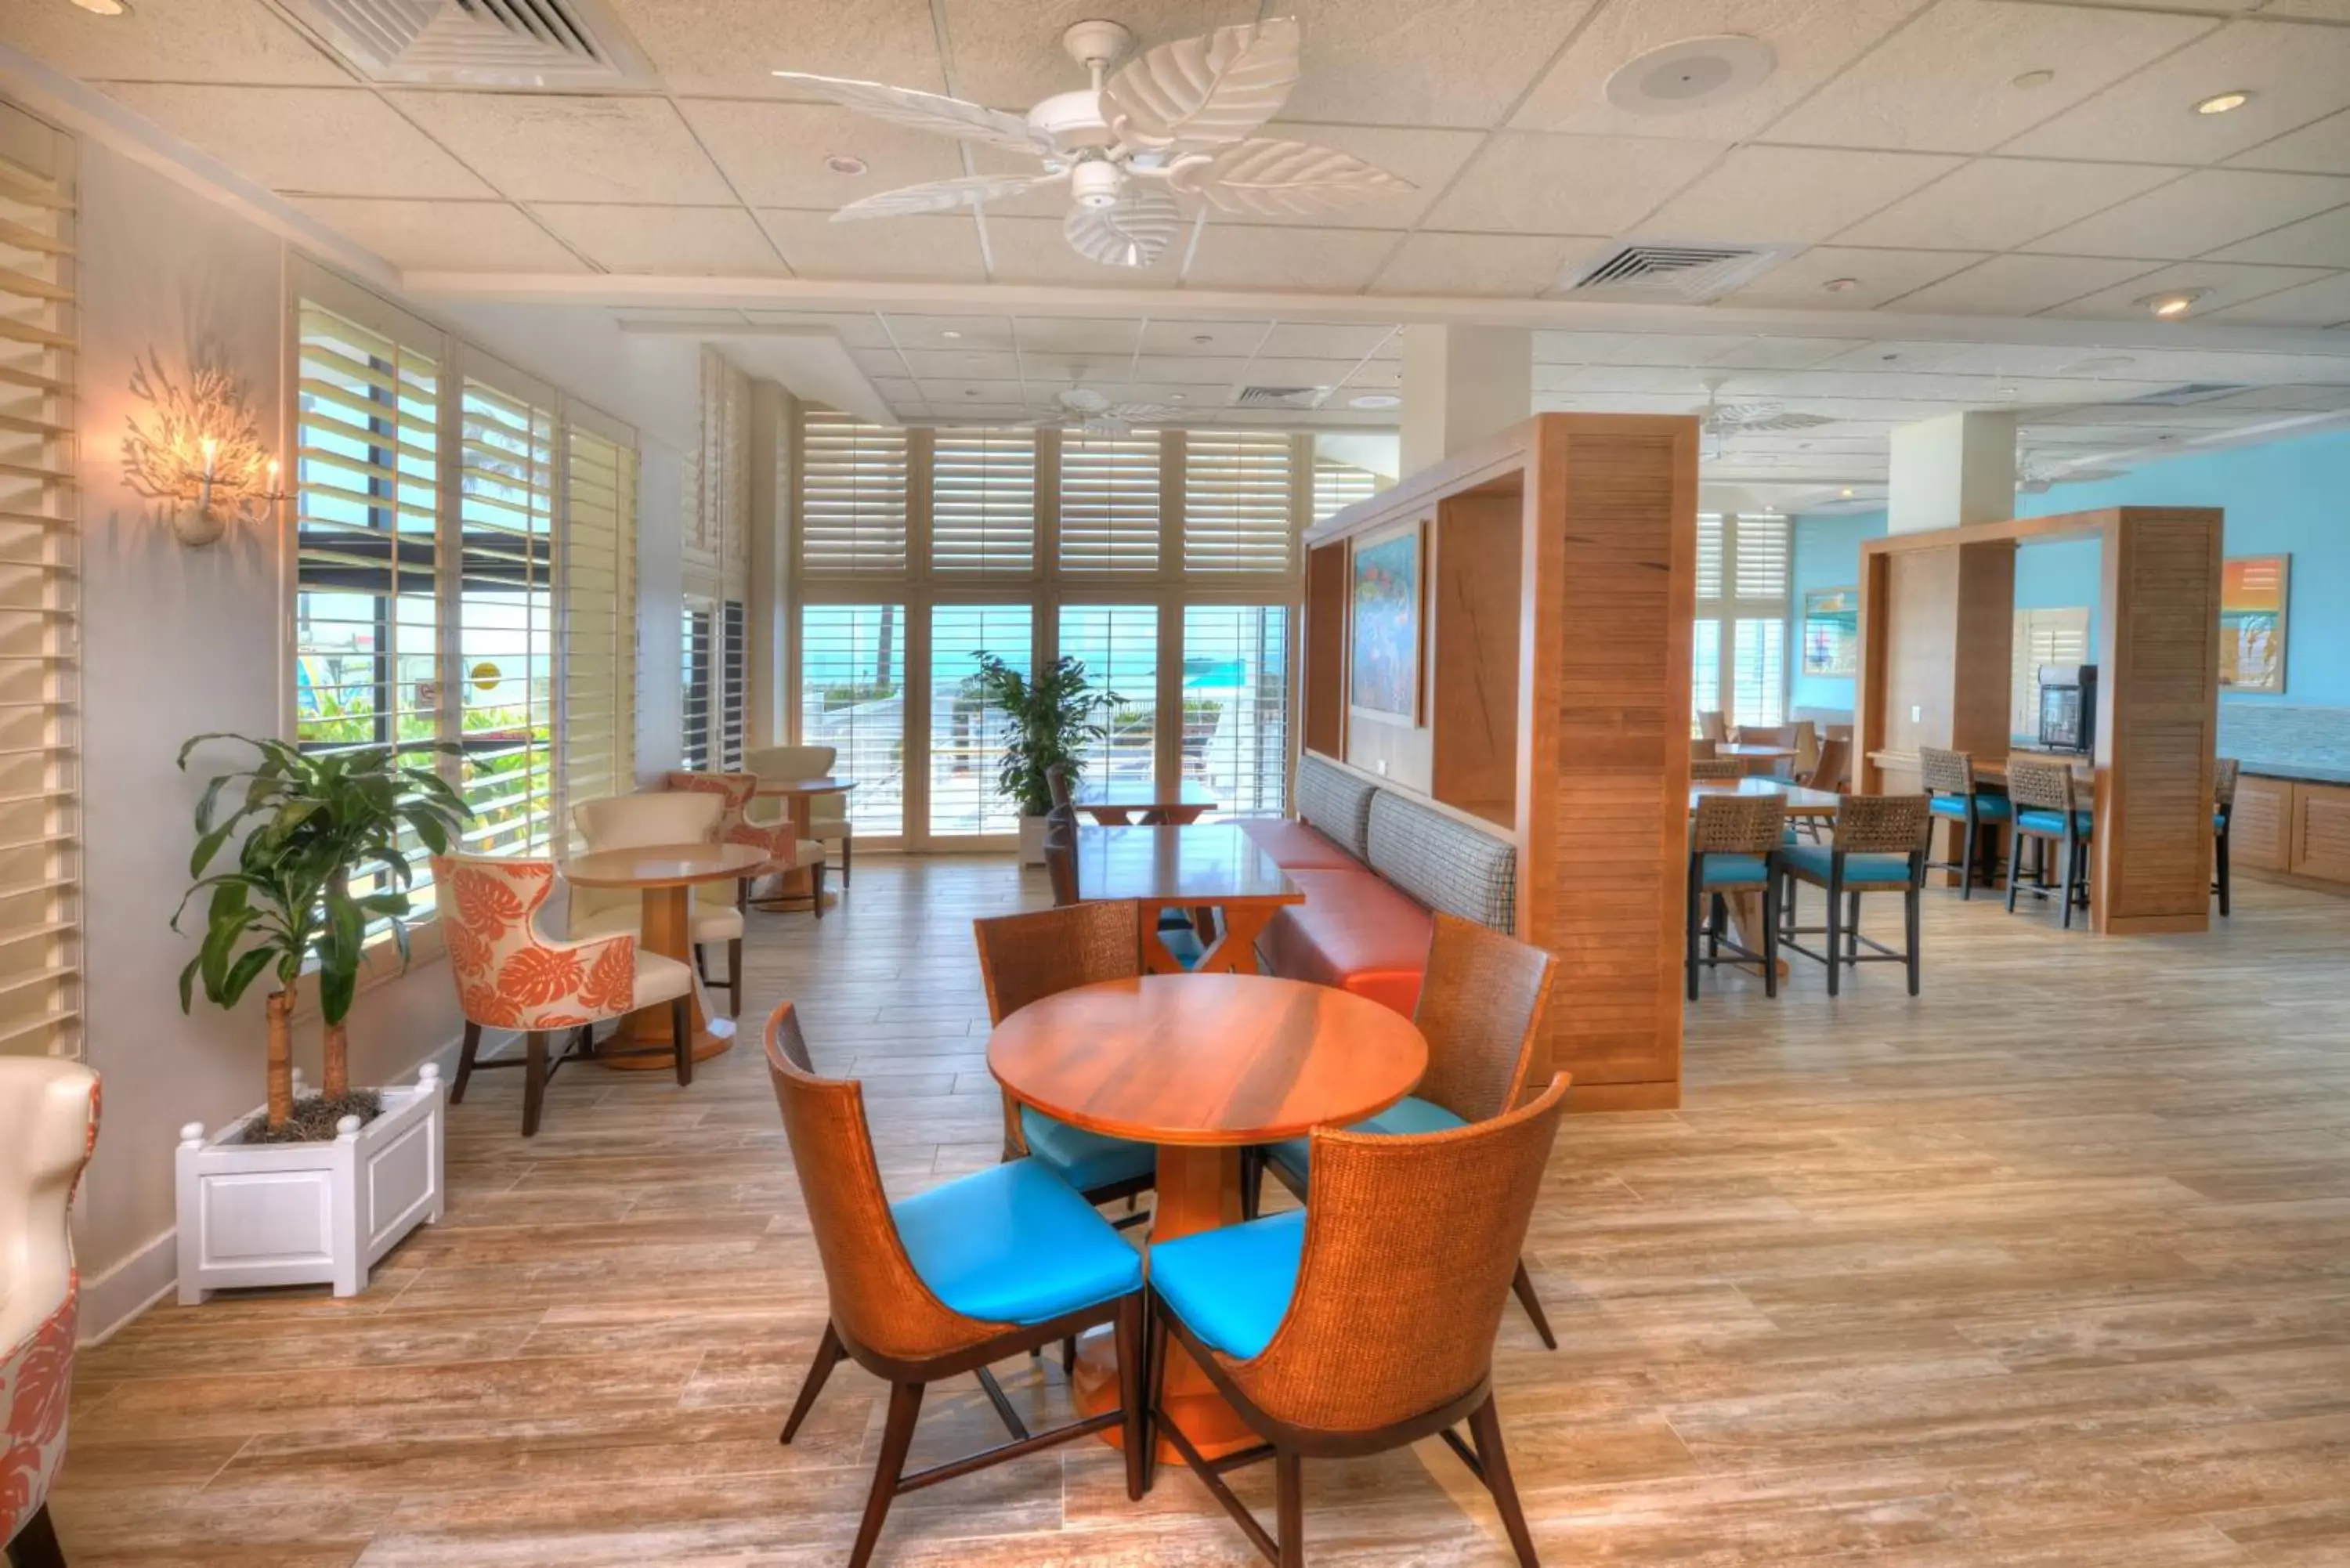 Area and facilities in Bahama House - Daytona Beach Shores